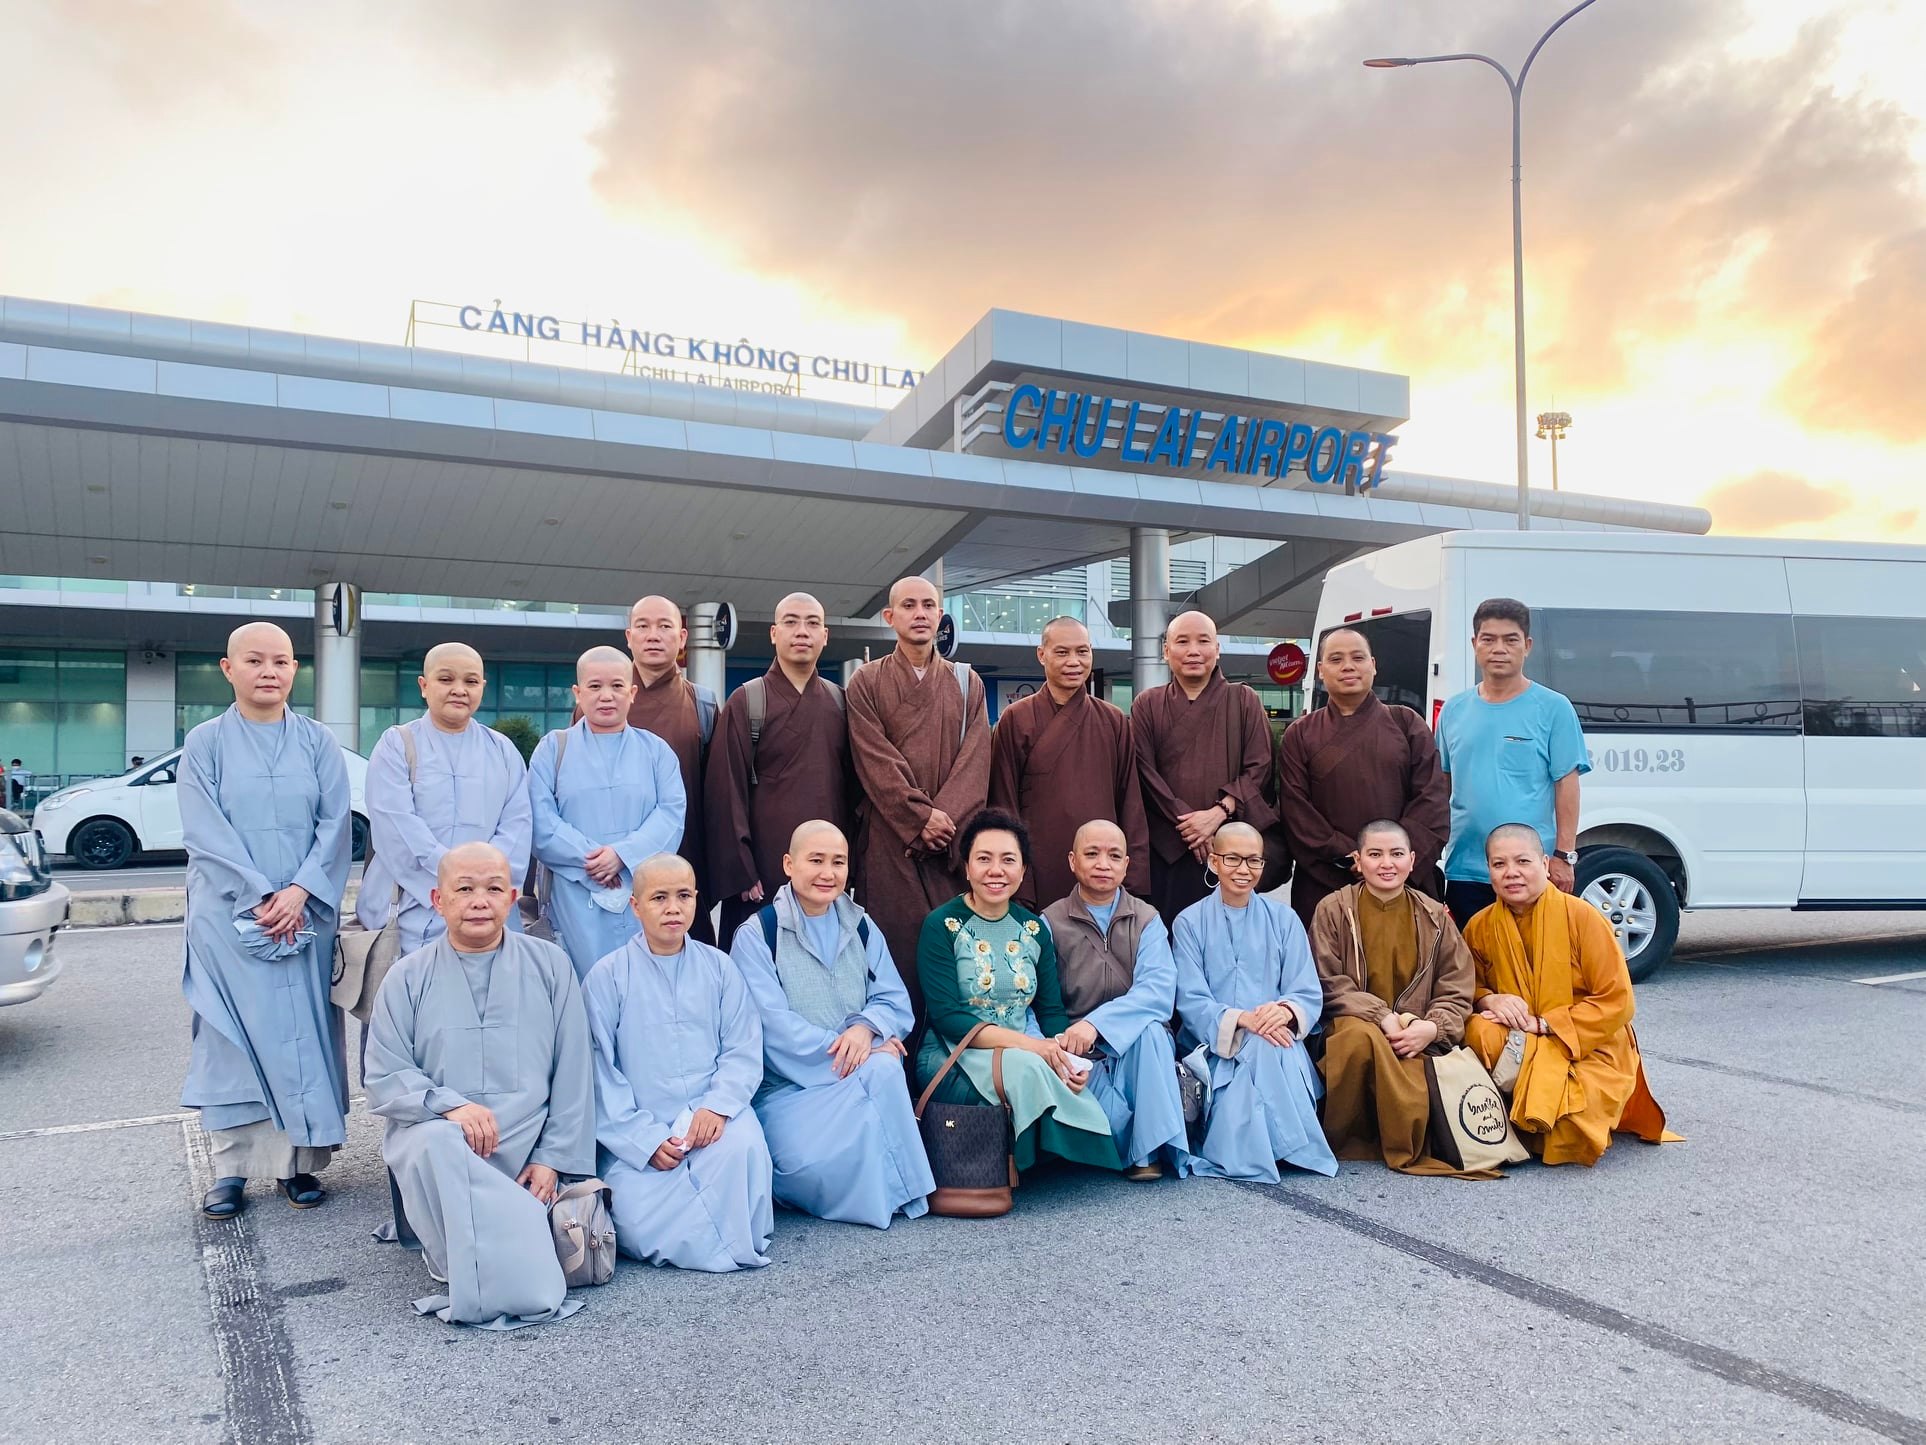 Phái đoàn Ban Văn hoá Phật giáo TP. HCM khởi hành đến miền Trung bàn giao 20 căn nhà tình nghĩa, giếng nước và 1200 phần quà đến các hộ gia đình nghèo